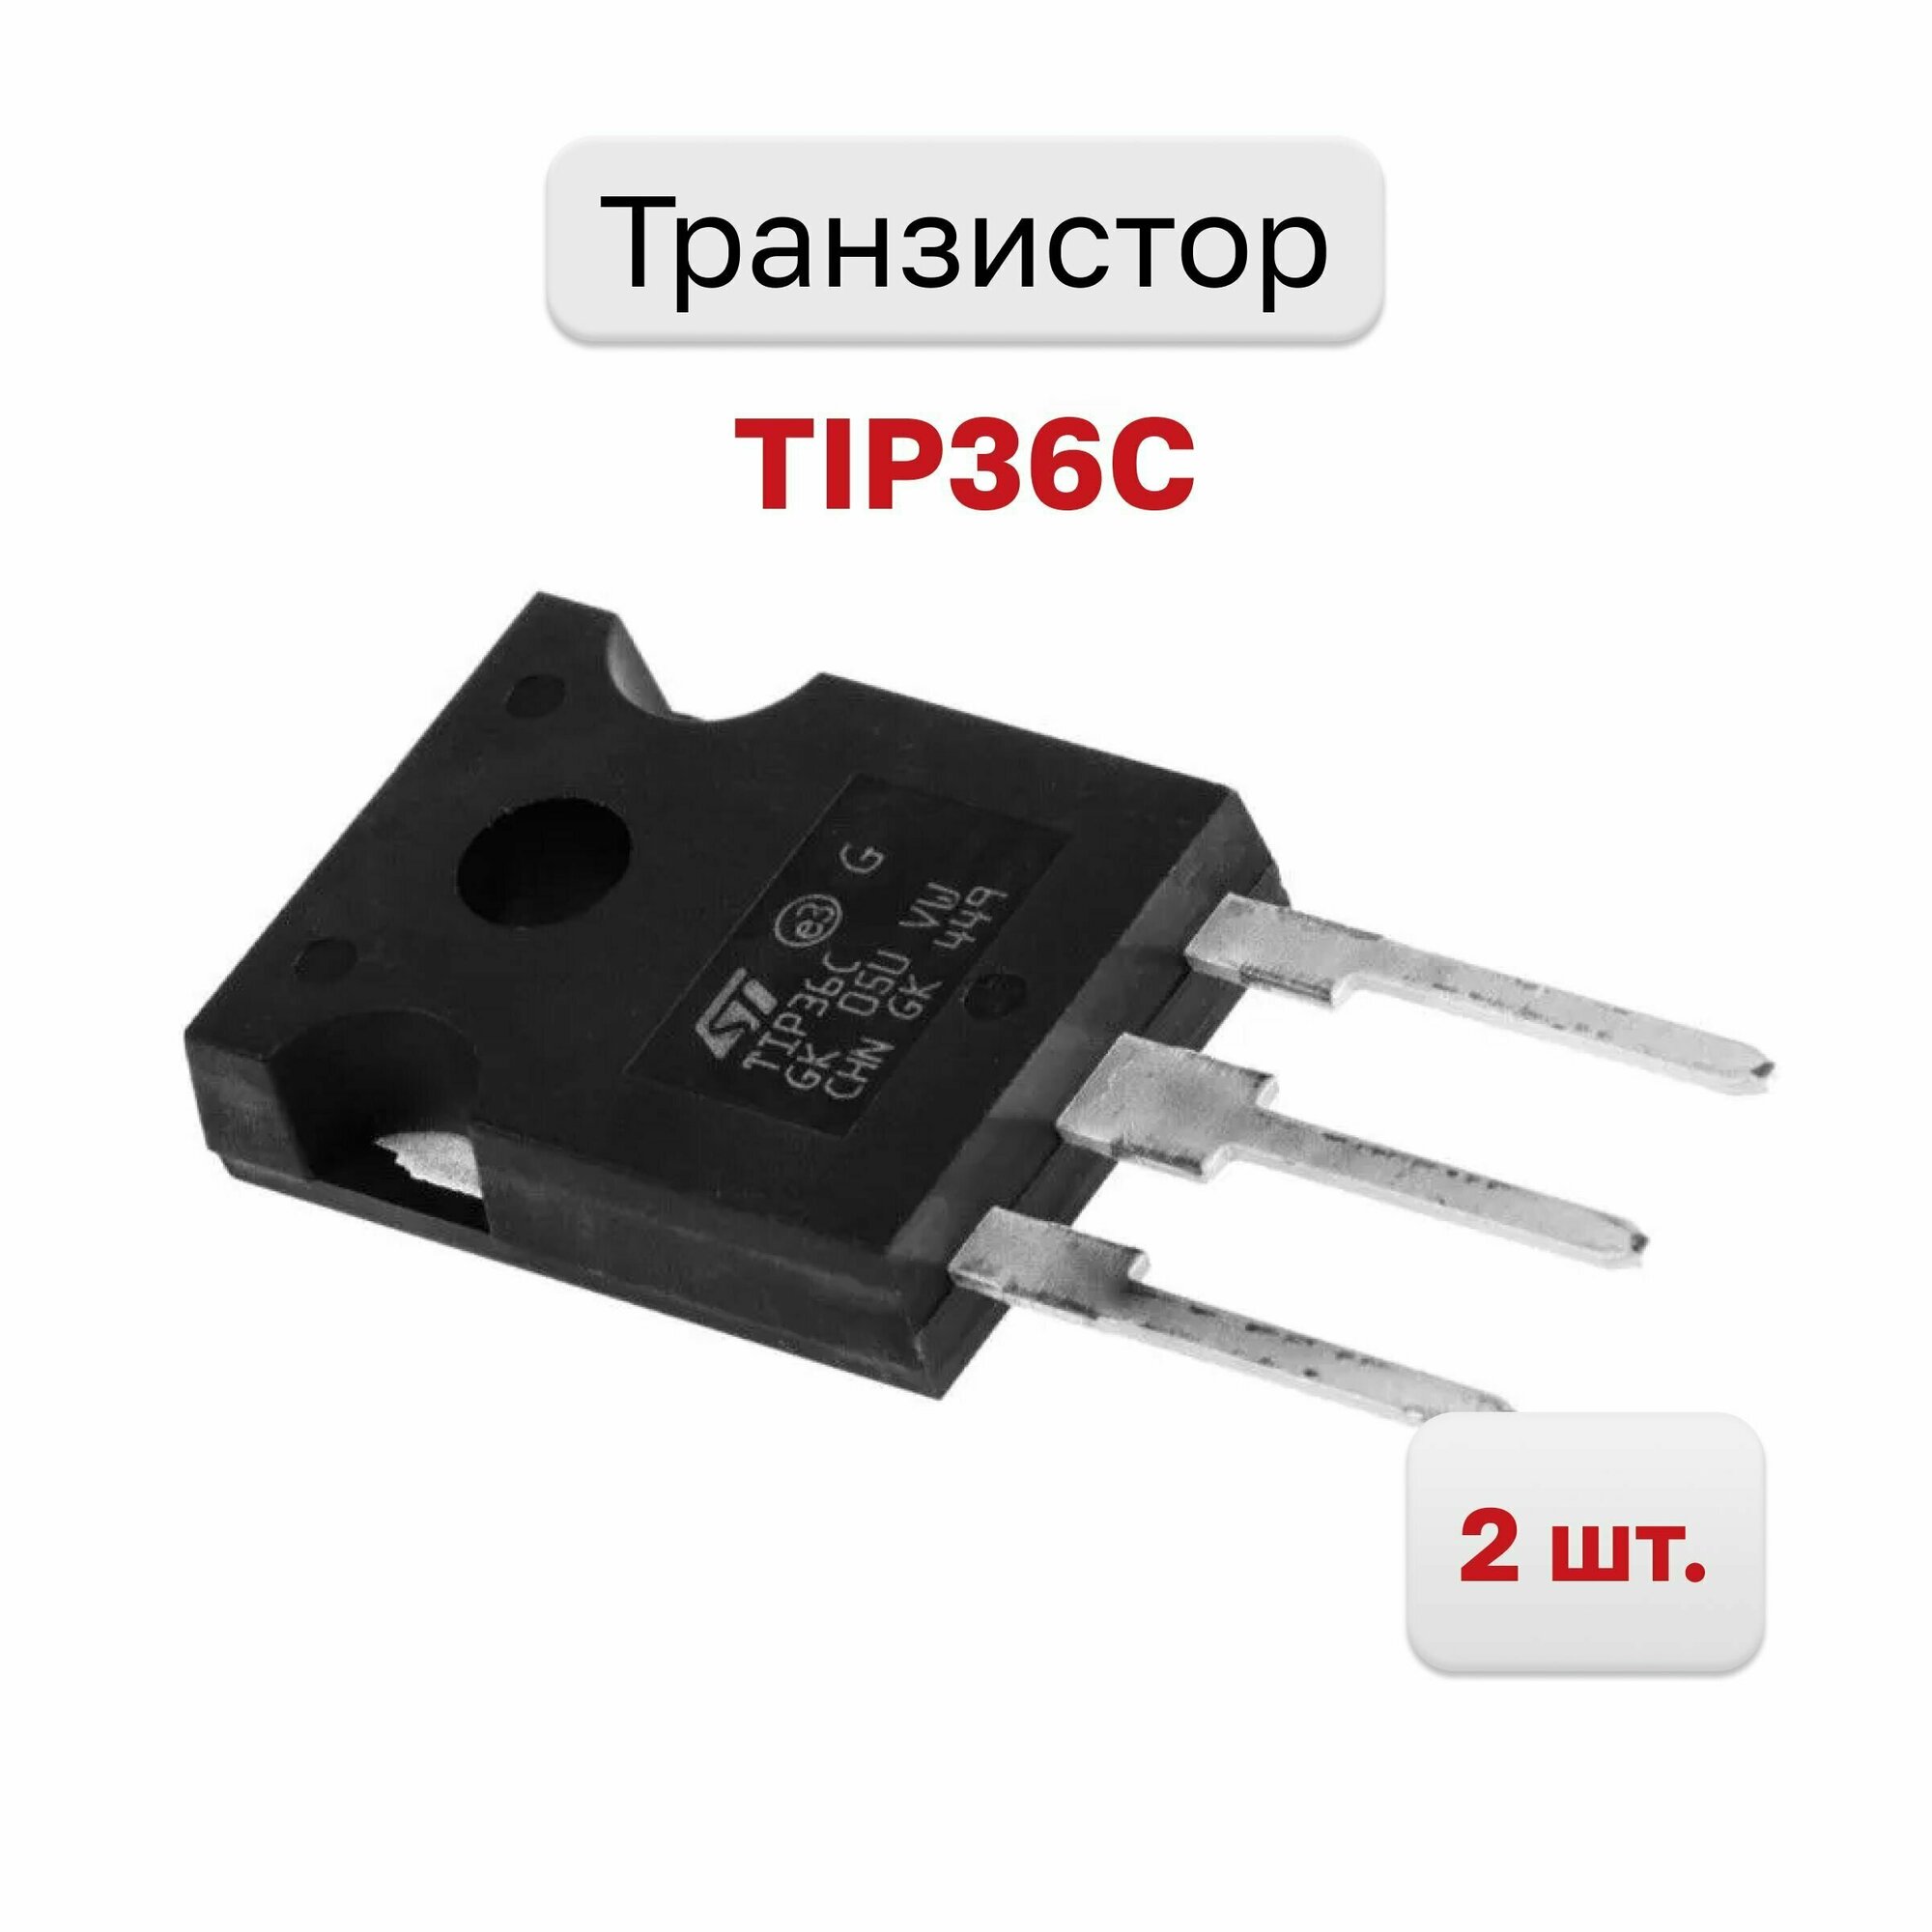 Транзистор TIP36C, 2 шт.